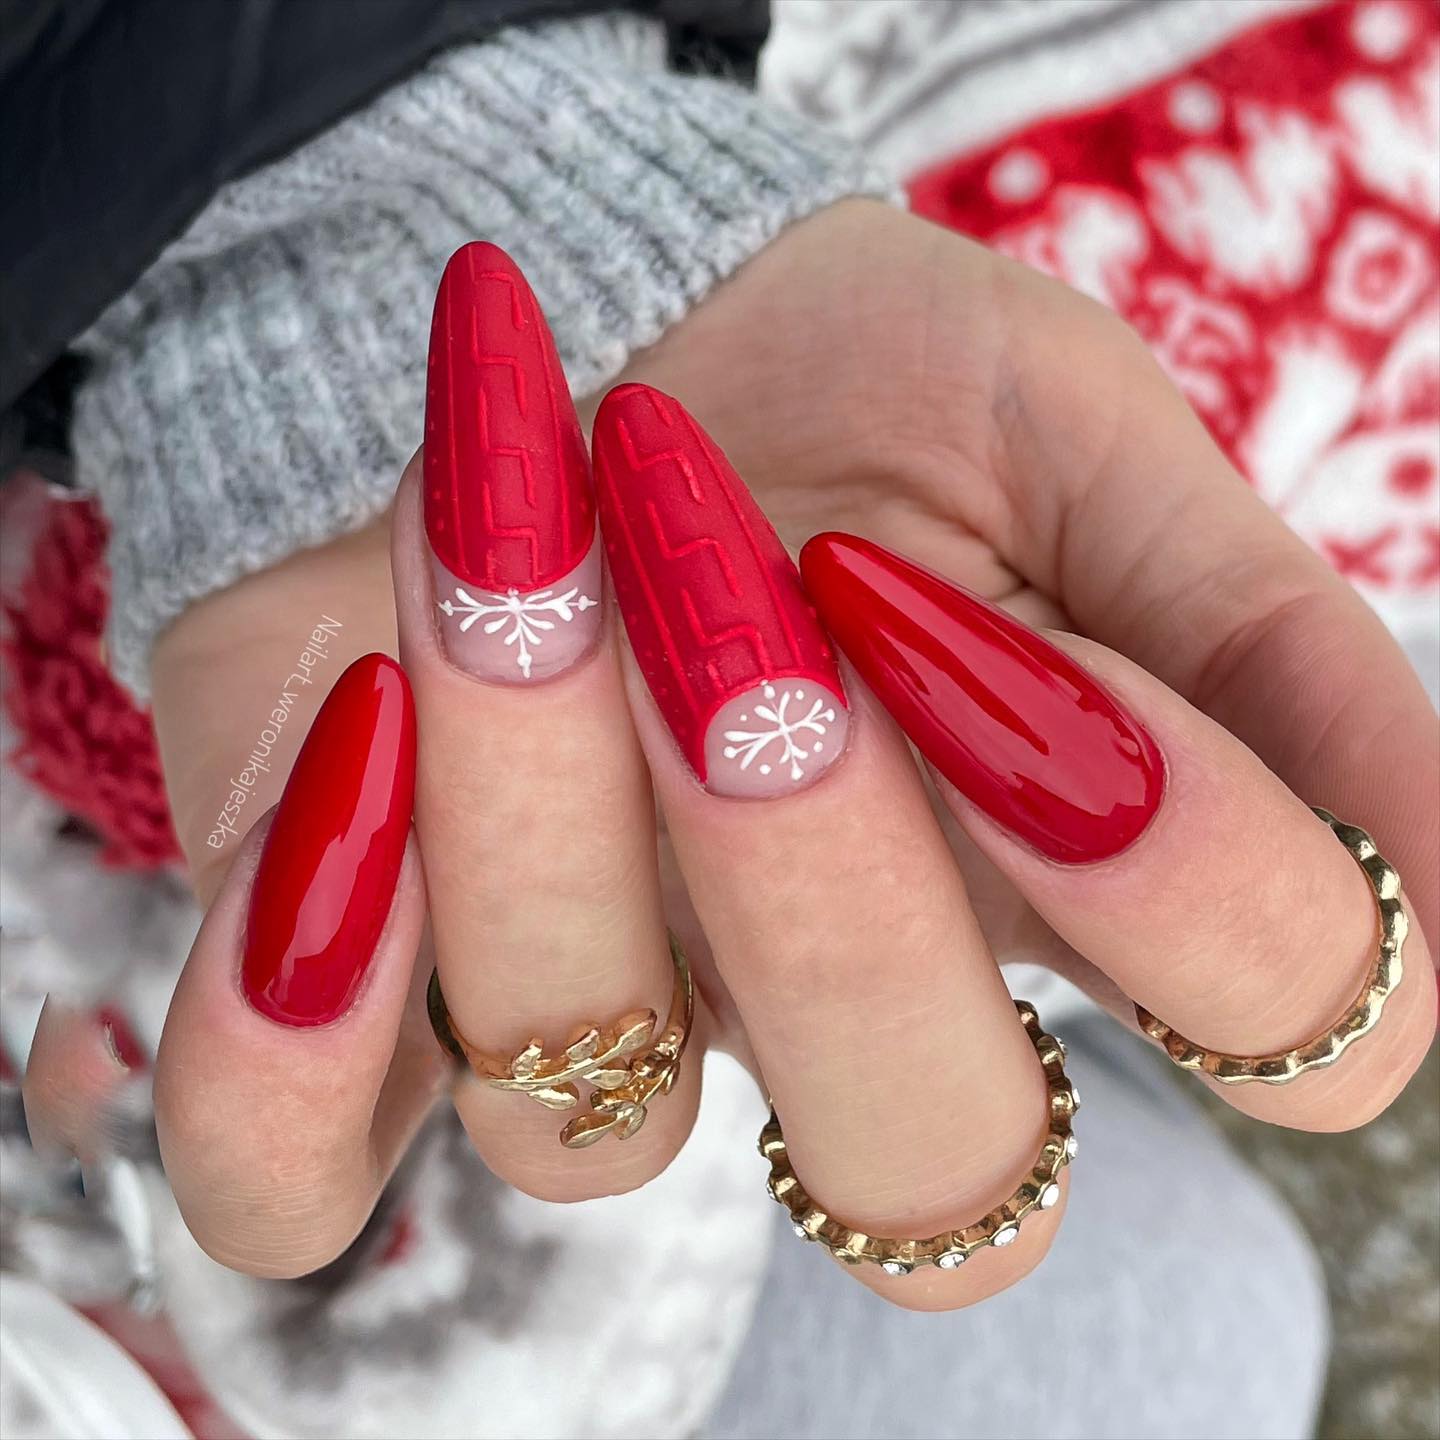 Lange rode nagels met trui ontwerp